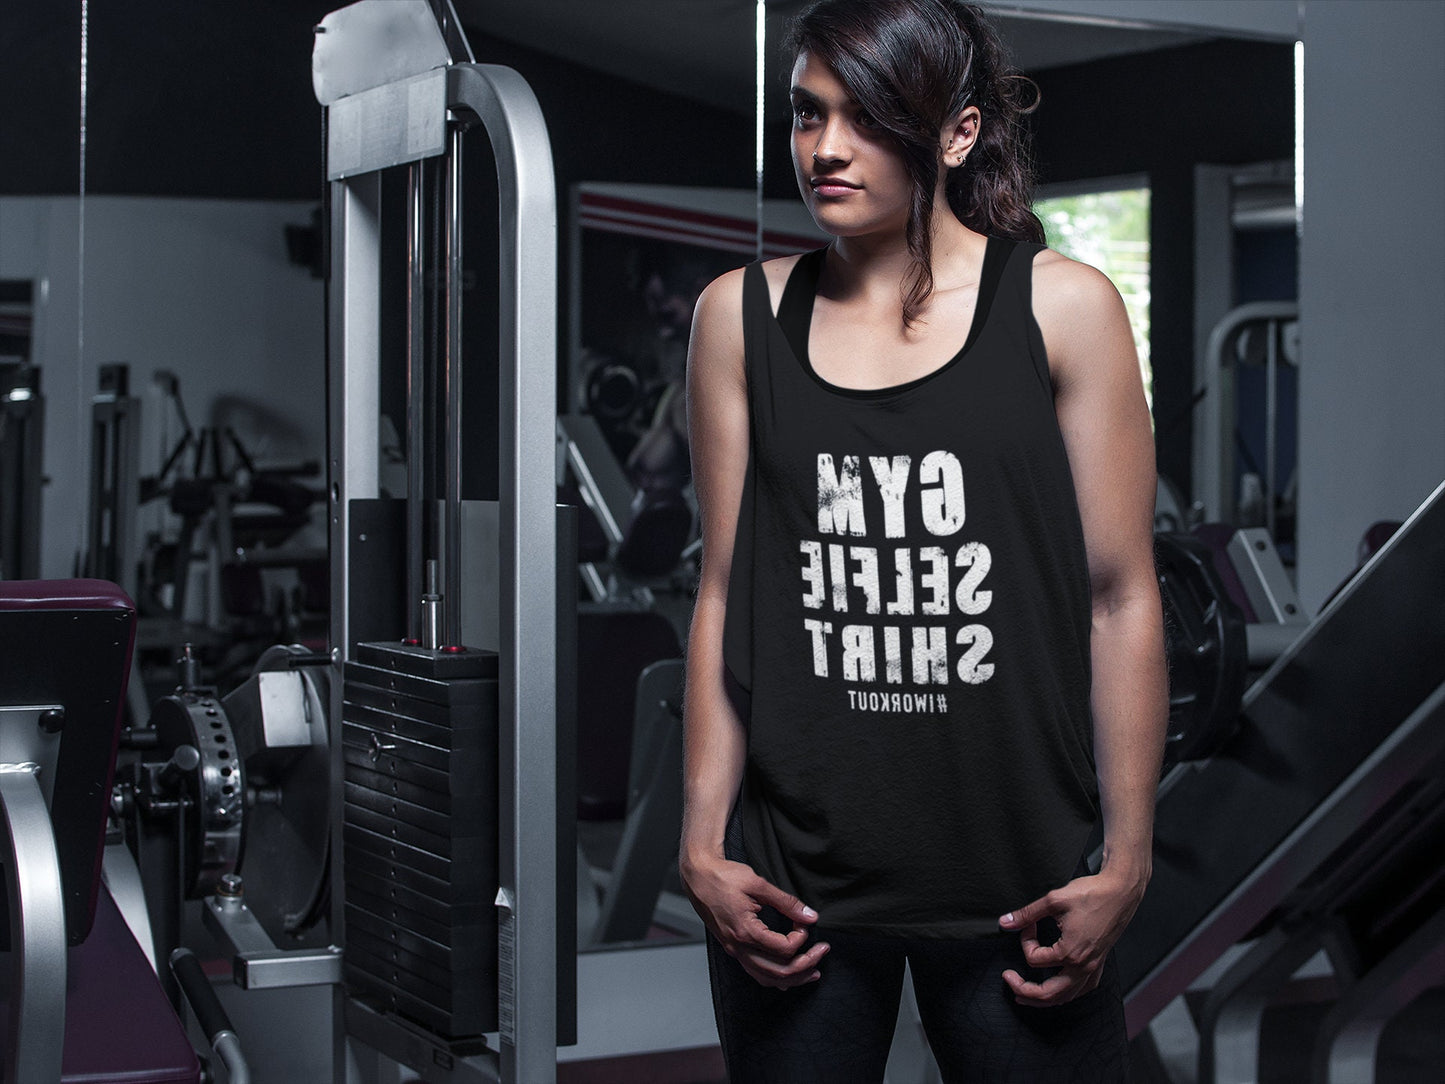 GYM SELFIE SHIRT - Womens workout tank top